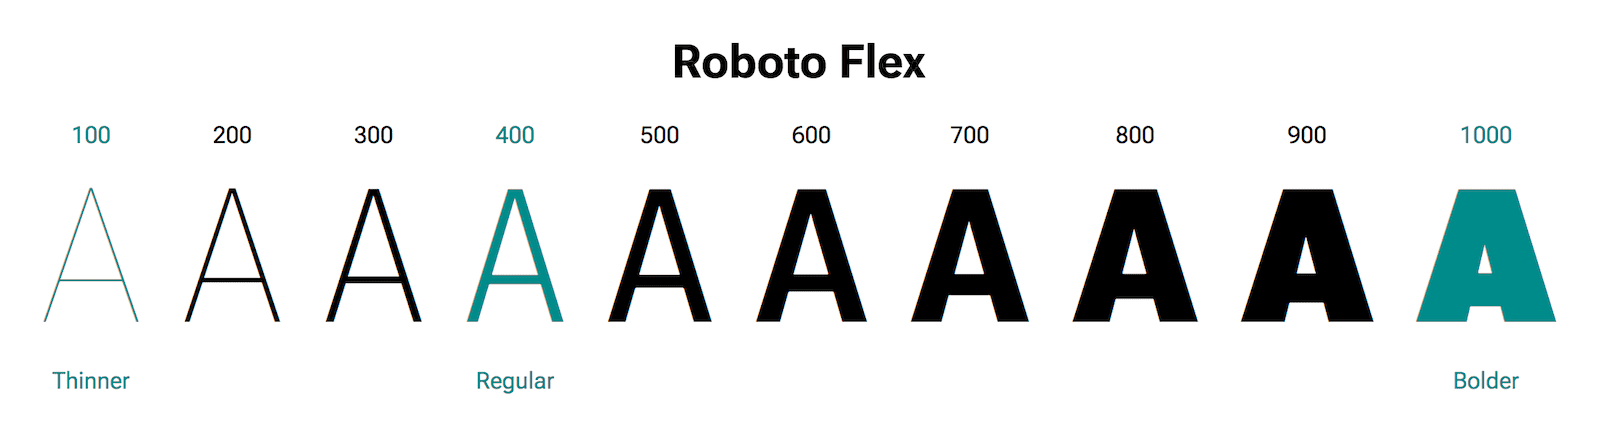 حرف A در وزن های مختلف نشان داده شده است.